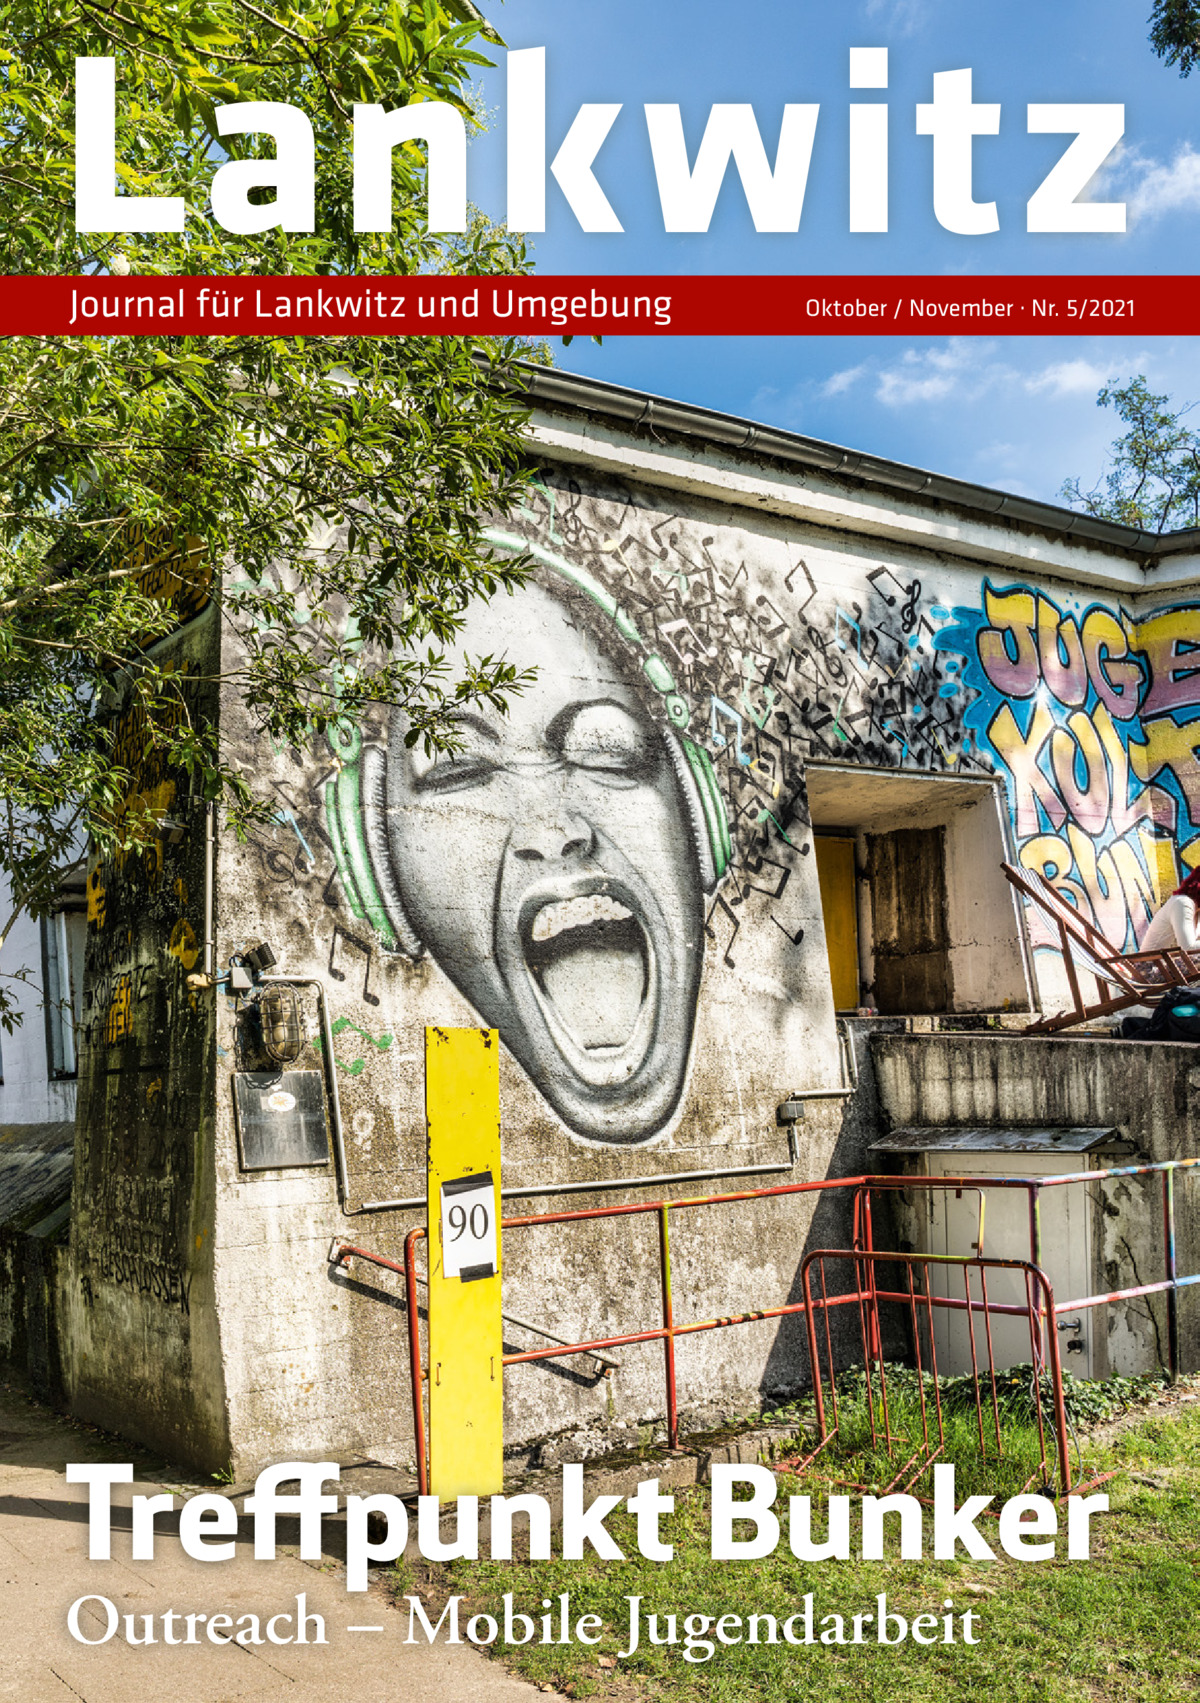 Lankwitz Journal für Lankwitz und Umgebung  Oktober / November · Nr. 5/2021  Treffpunkt Bunker Outreach – Mobile Jugendarbeit